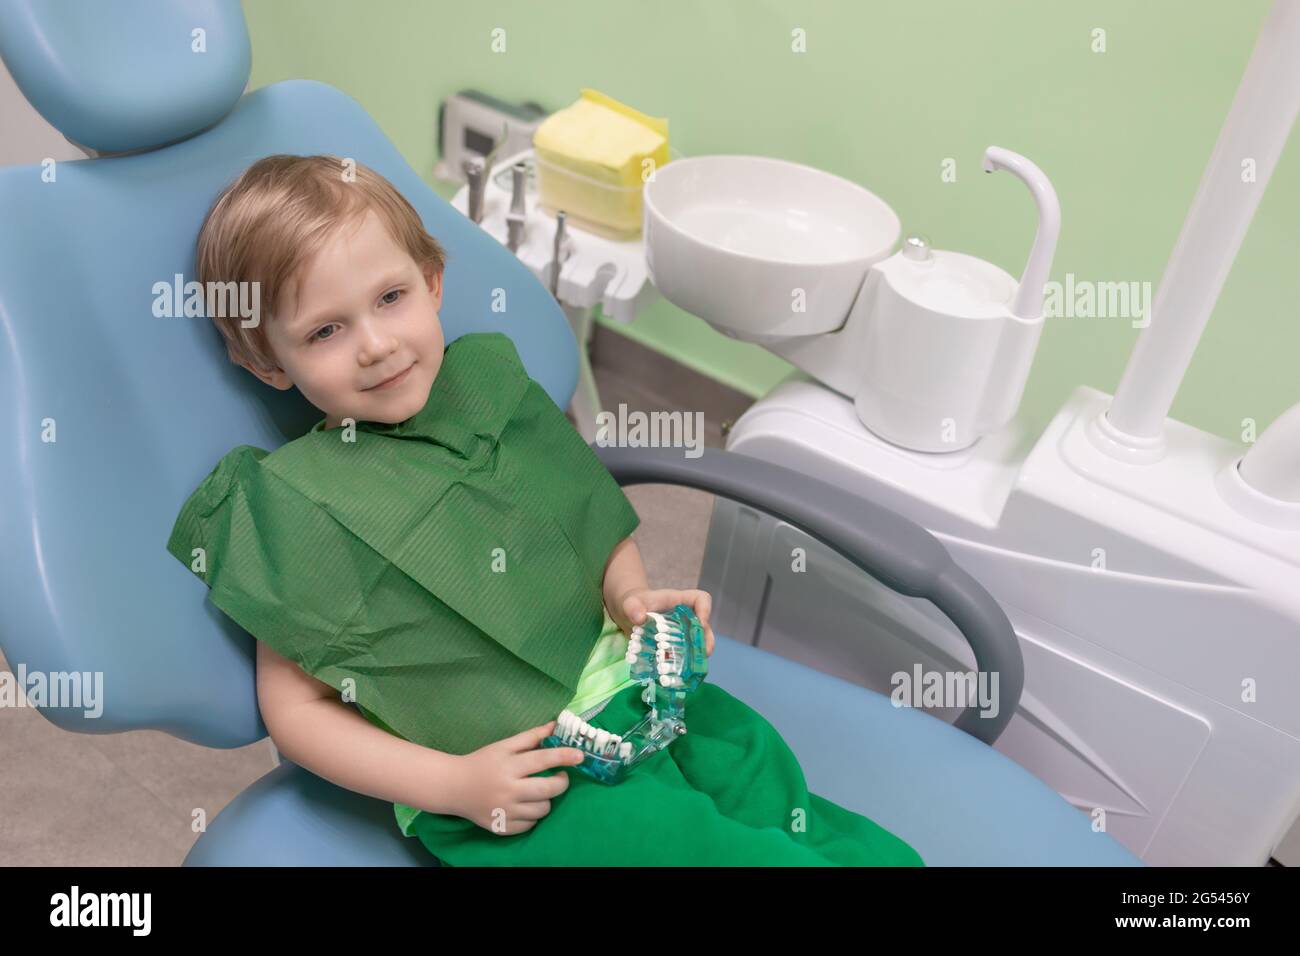 Décontracté enfant content homme assis dans la chaise chez le dentiste dans  les mains de la mâchoire avec des dents blanches jouet et des accessoires.  Concept de traitement indolore et anesthésie i